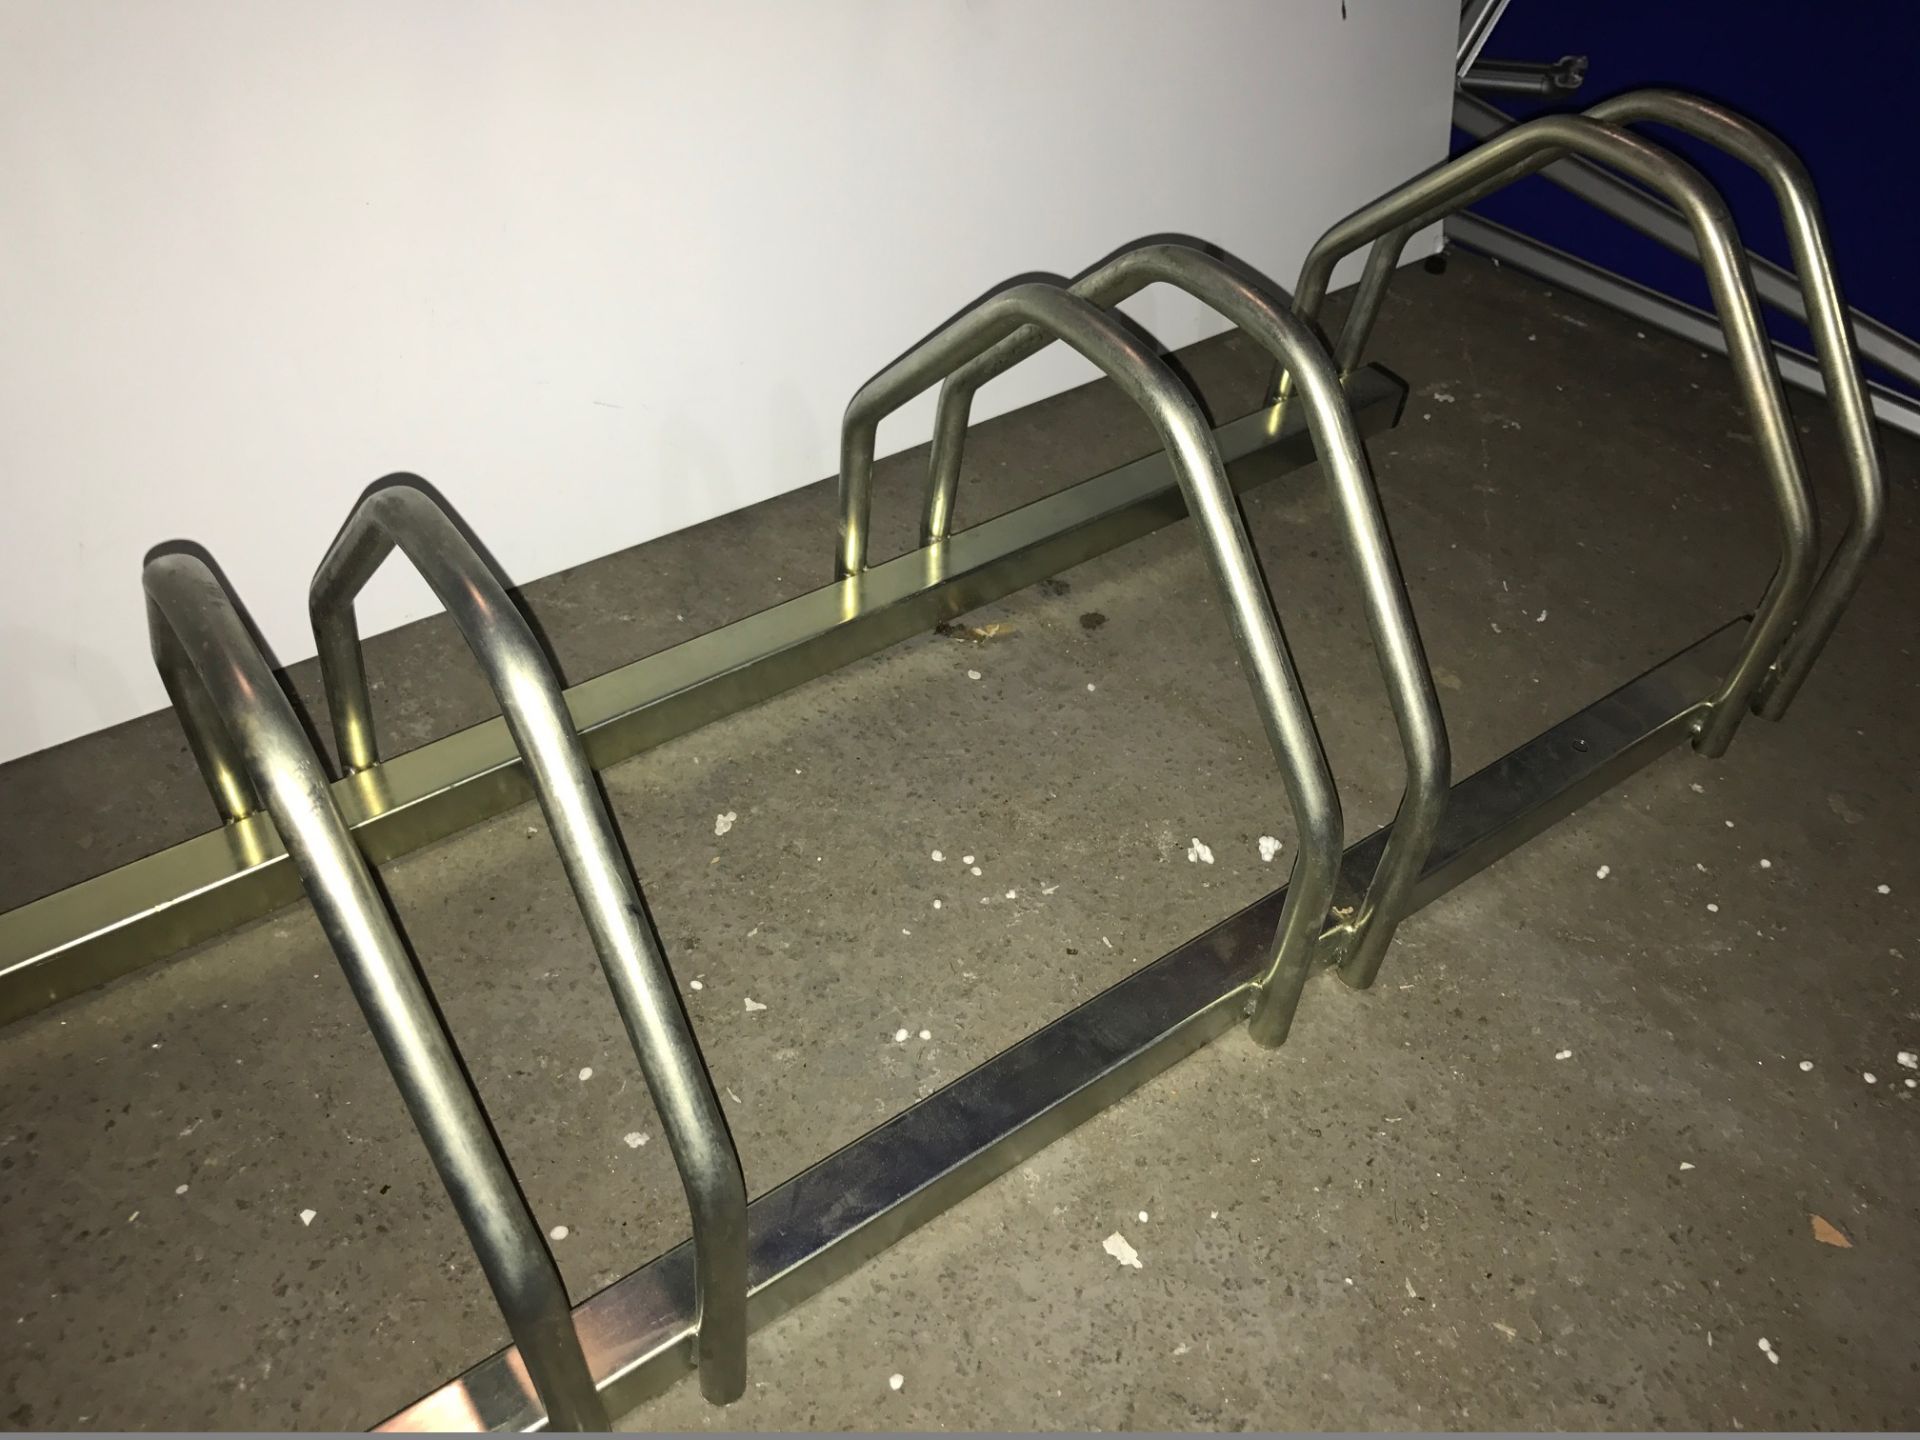 Mottez 5 Bike Floor Stand - RRP £80.99 - Image 2 of 3